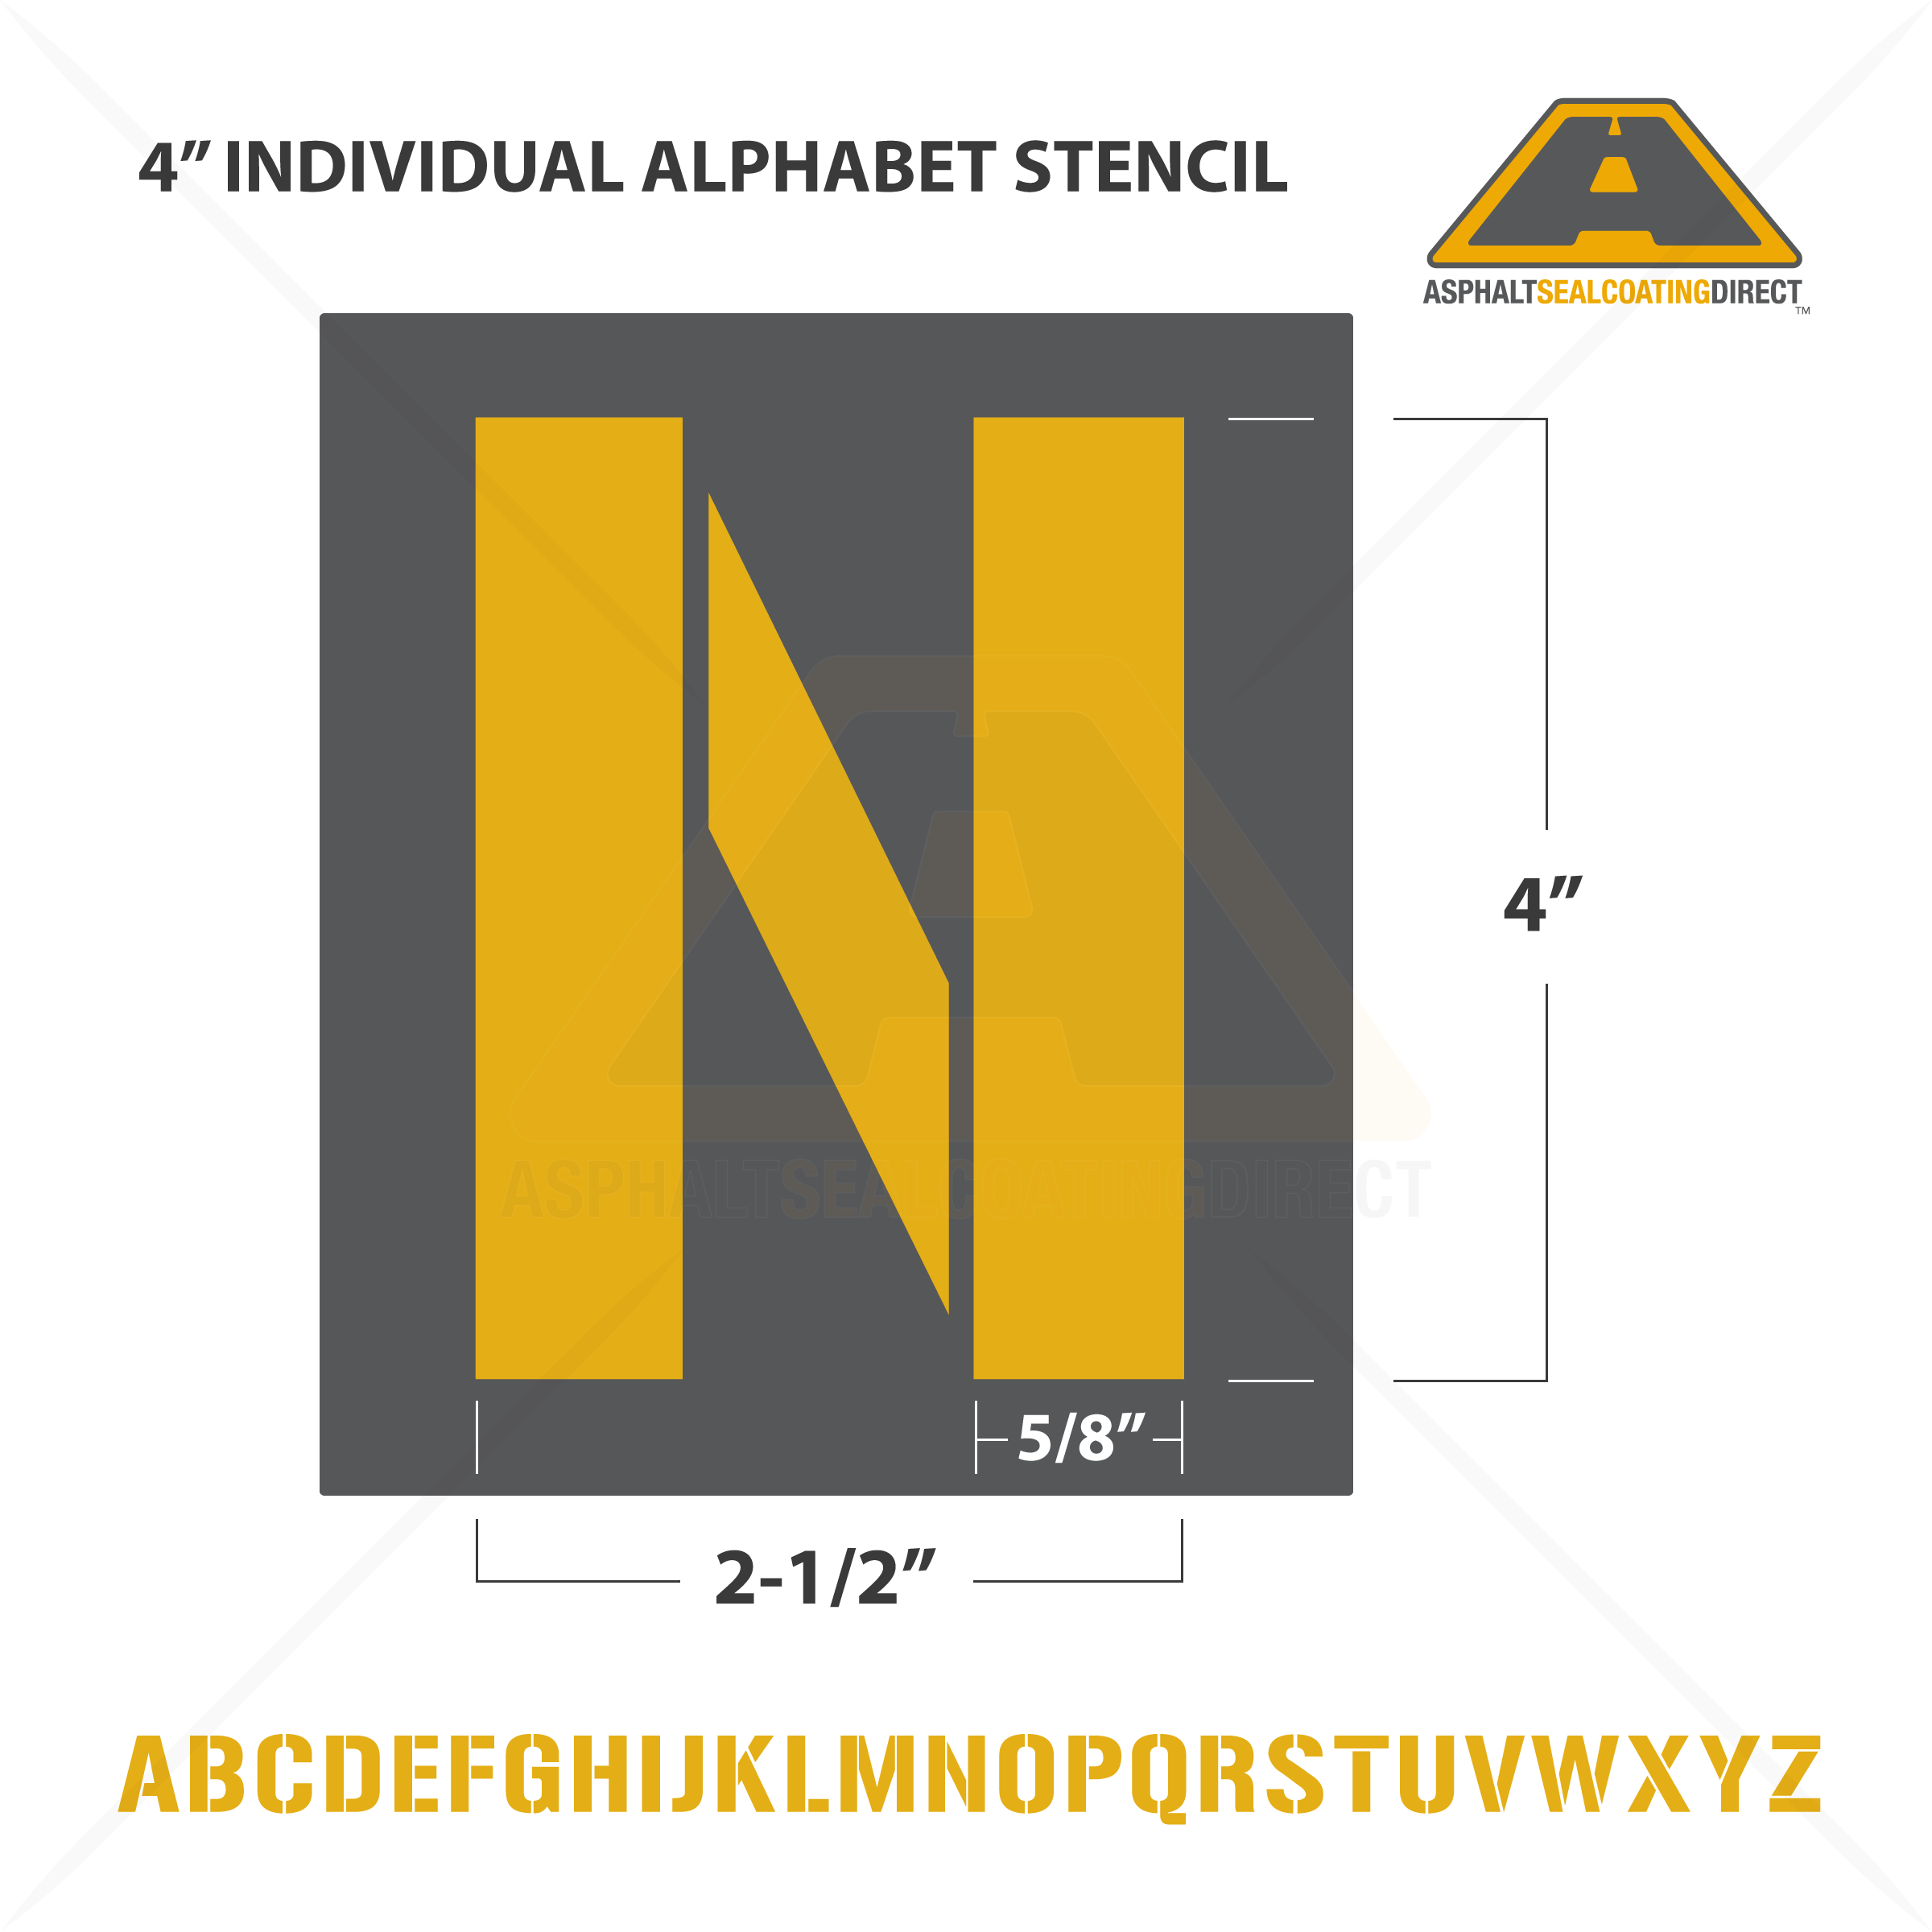 How to Choose Asphalt Letter Stencils